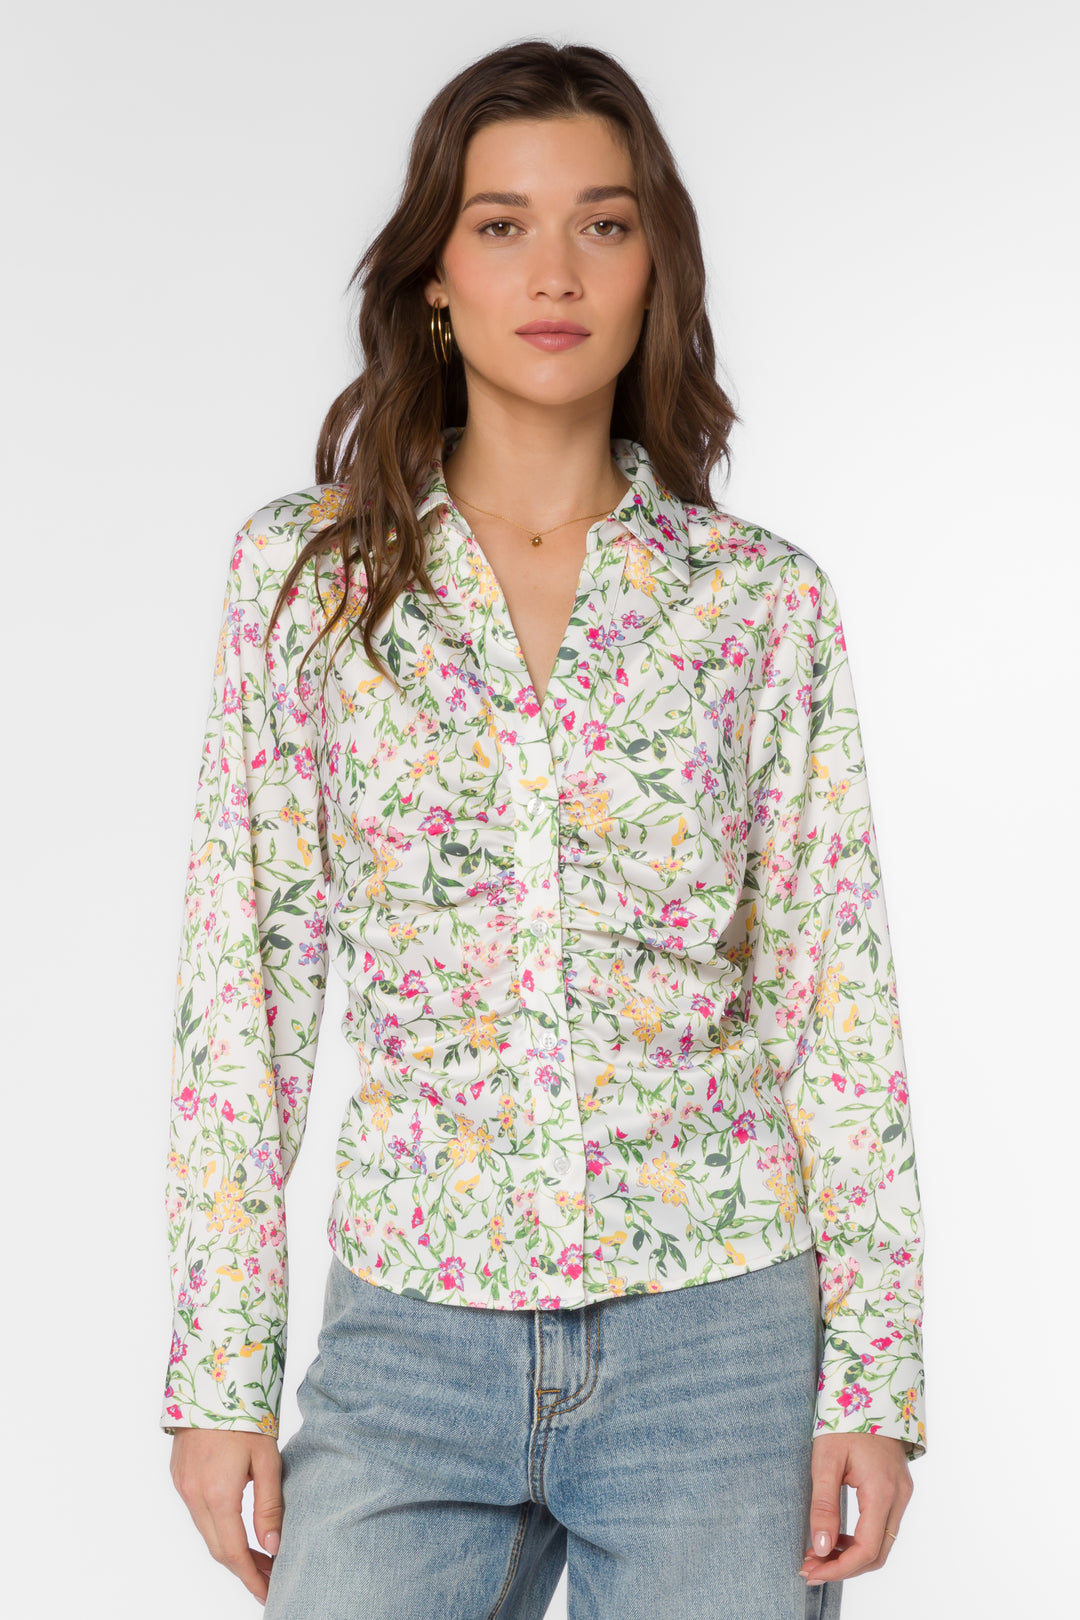 Bessie Spring Ivy Shirt - Tops - Velvet Heart Clothing